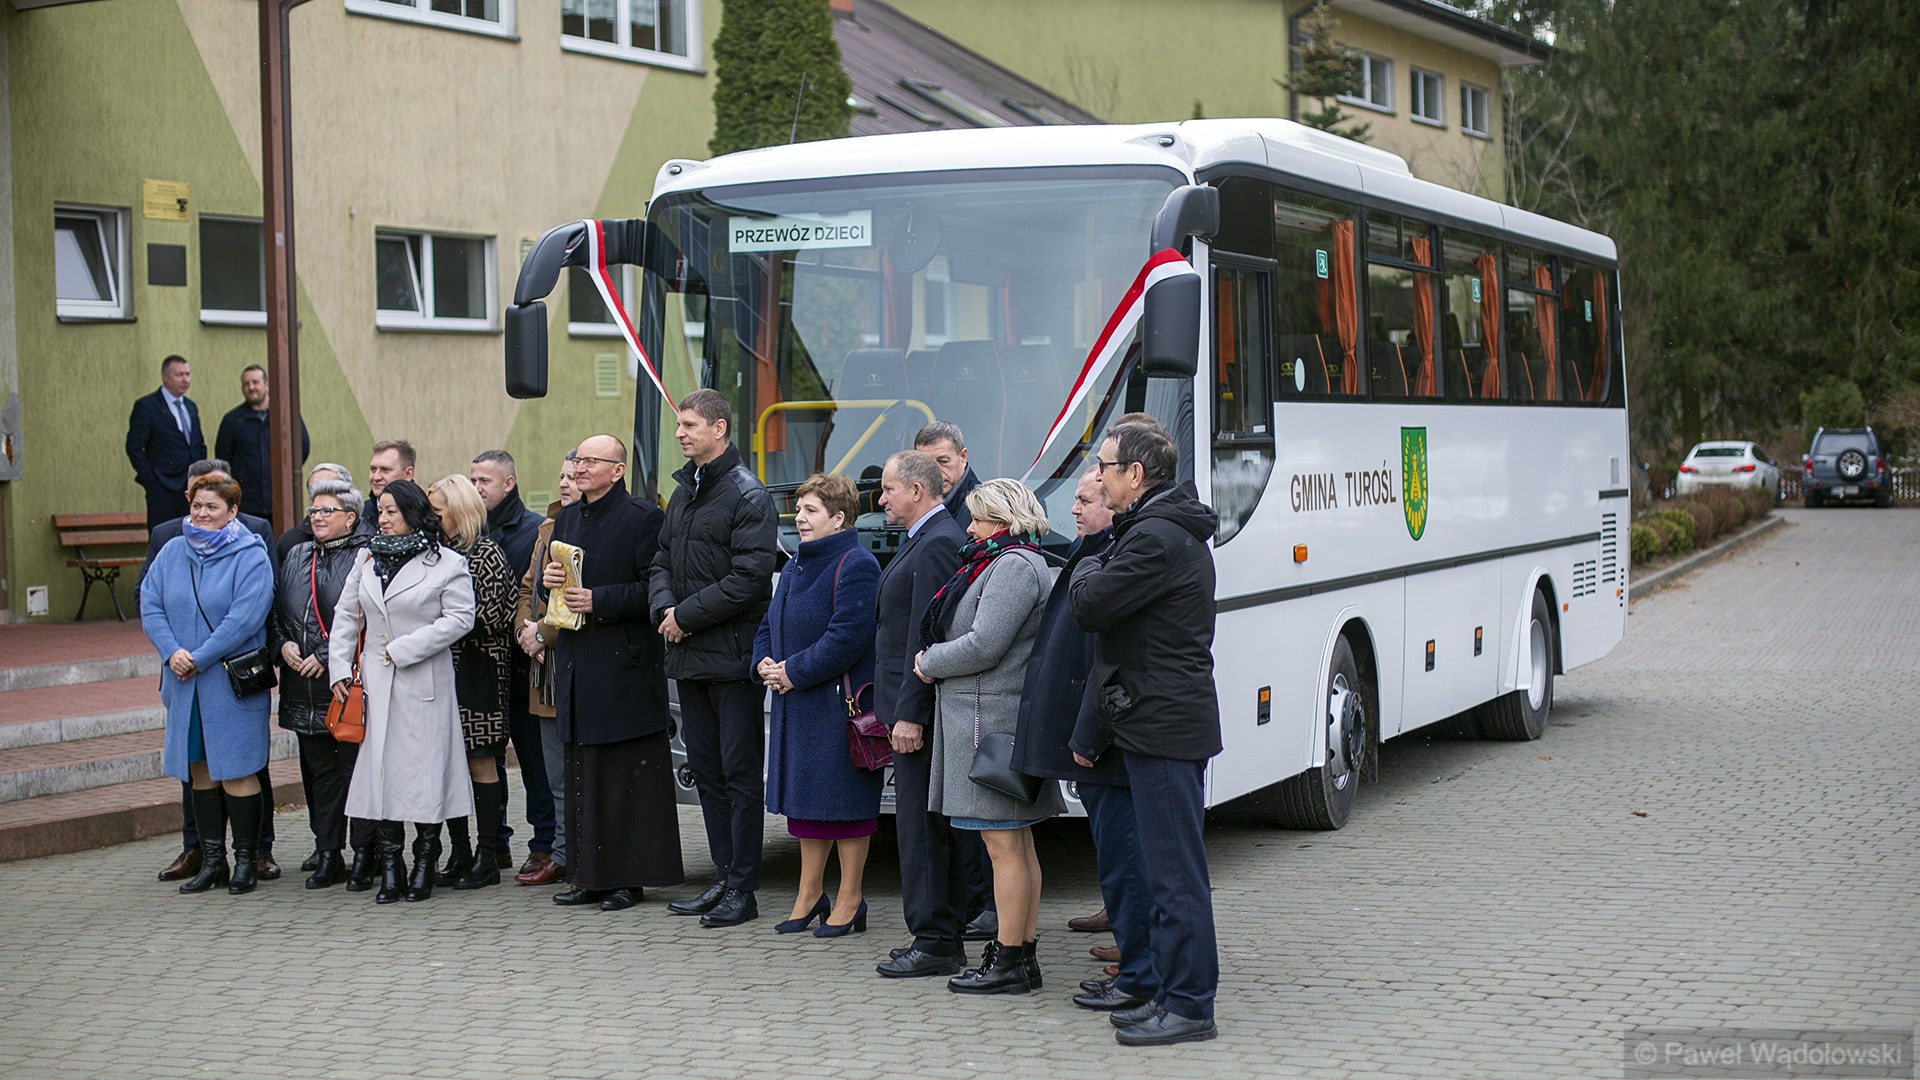 Przekazanie nowego autobusu szkolnego dla gminy Turośl, fot. Paweł Wądołowski